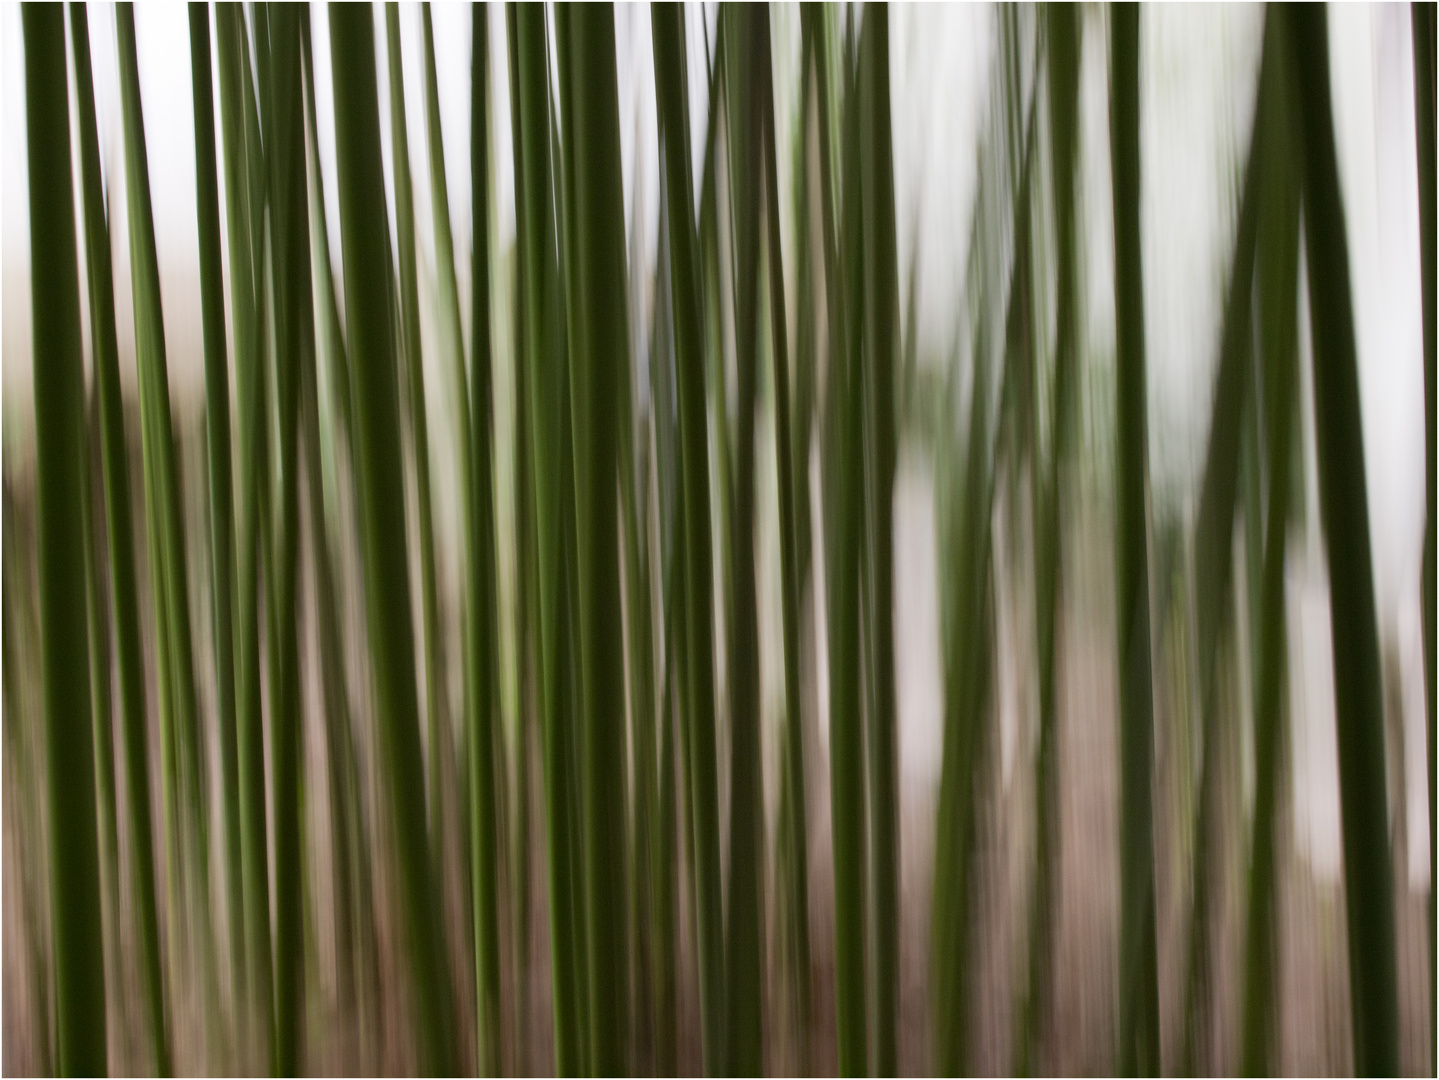 Bambus einmal anders